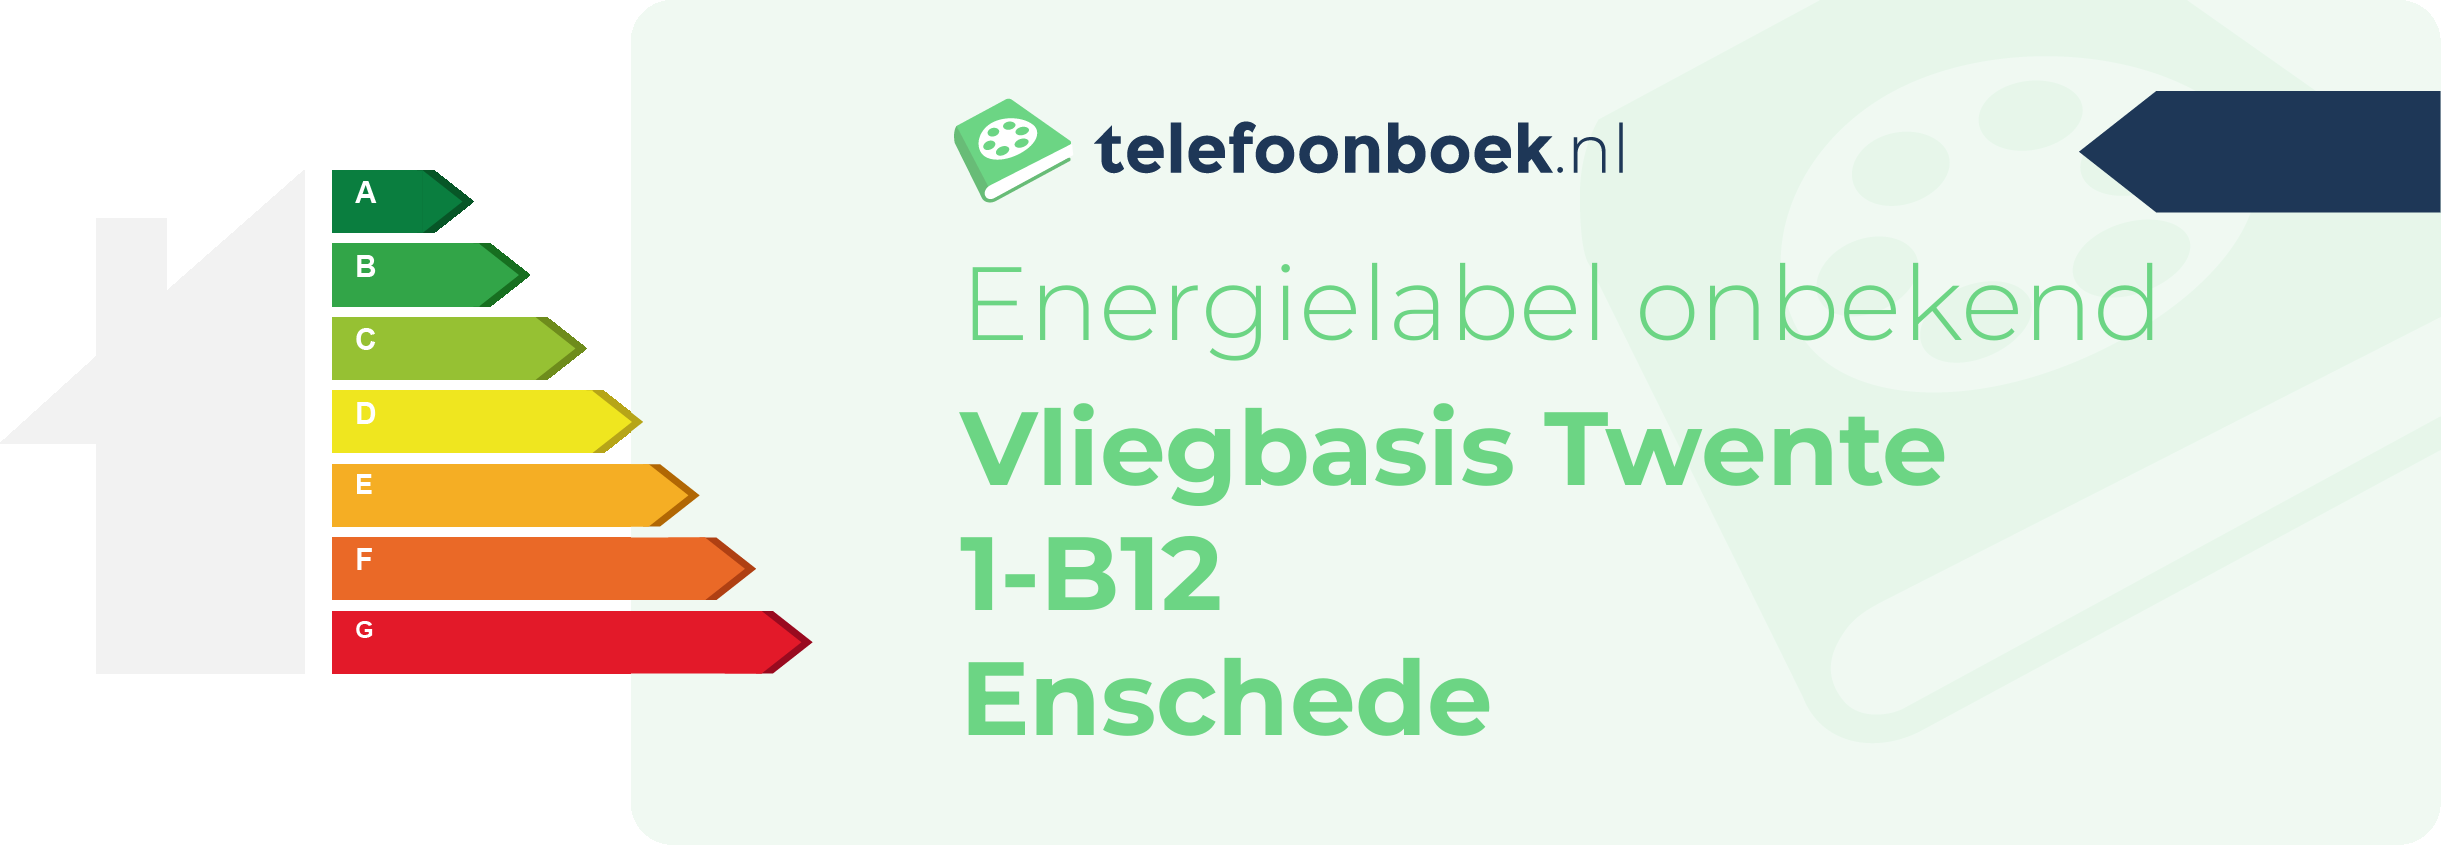 Energielabel Vliegbasis Twente 1-B12 Enschede